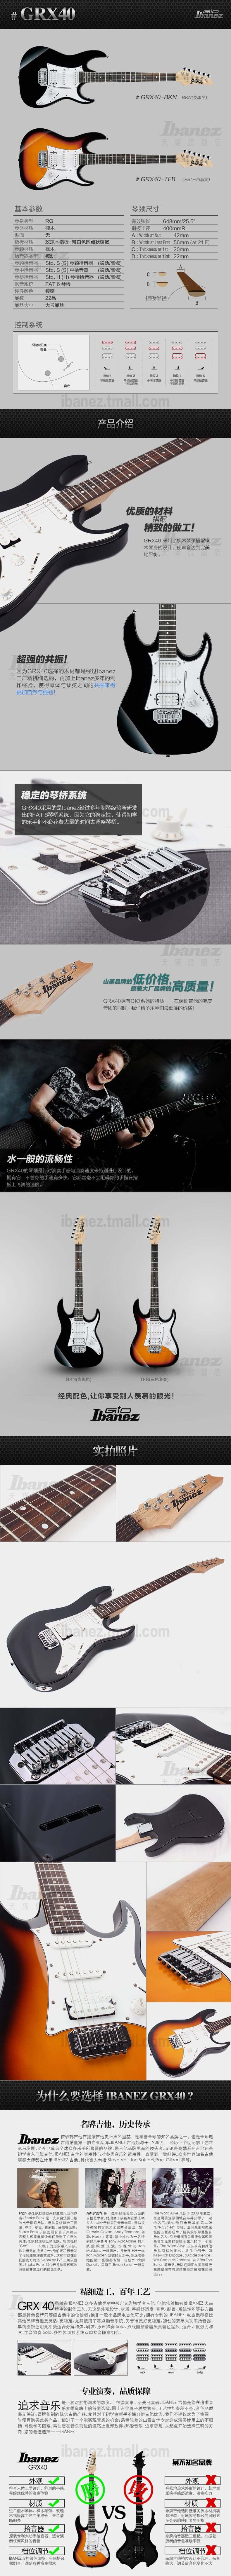 Ibanez官方旗舰店 爱宾斯 依班娜 GRX40电吉他双色可选超高性价比 06